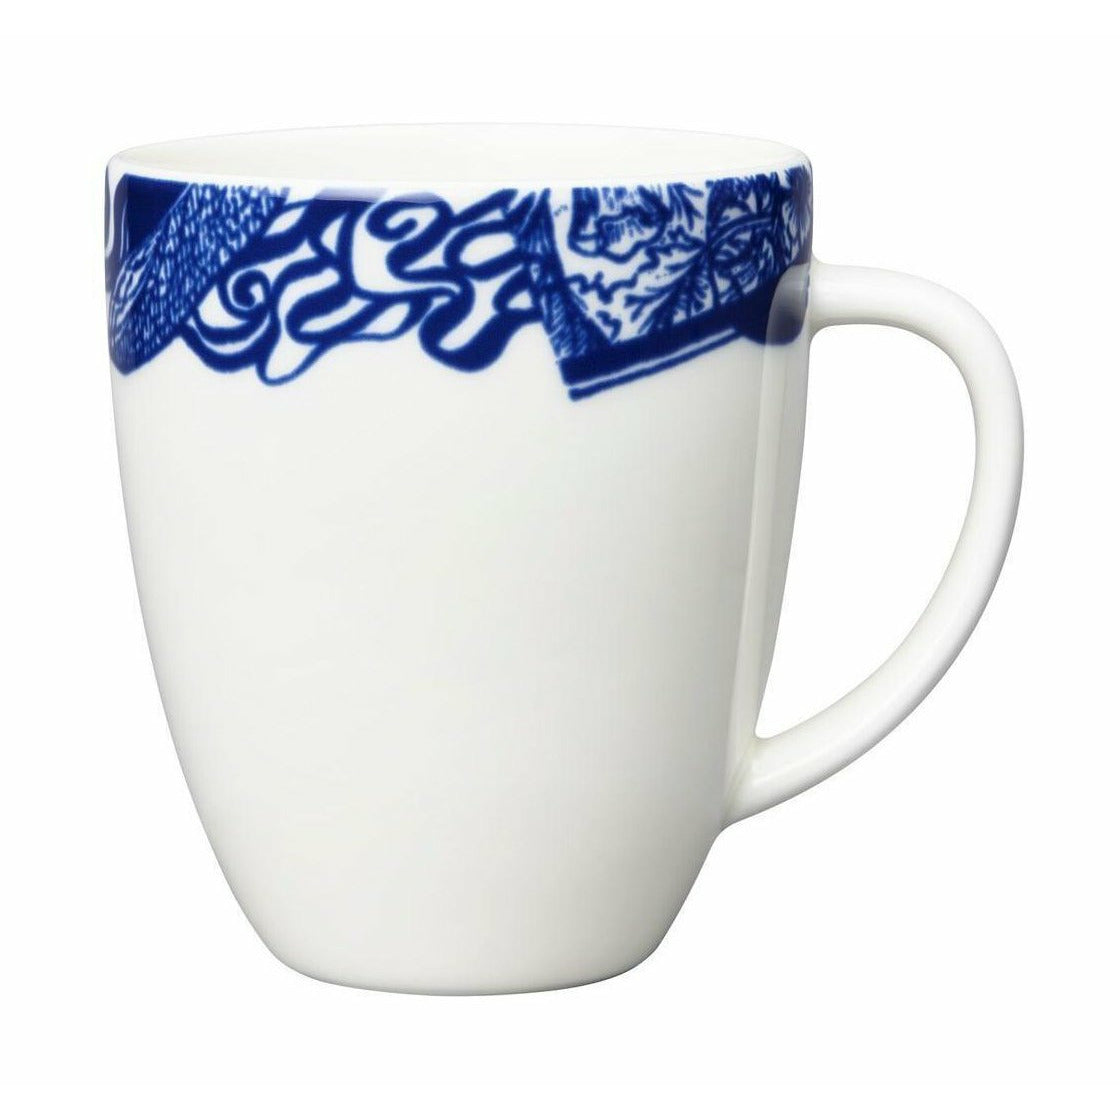 Arabia pastoraali vase 13 cm, hvit/blå